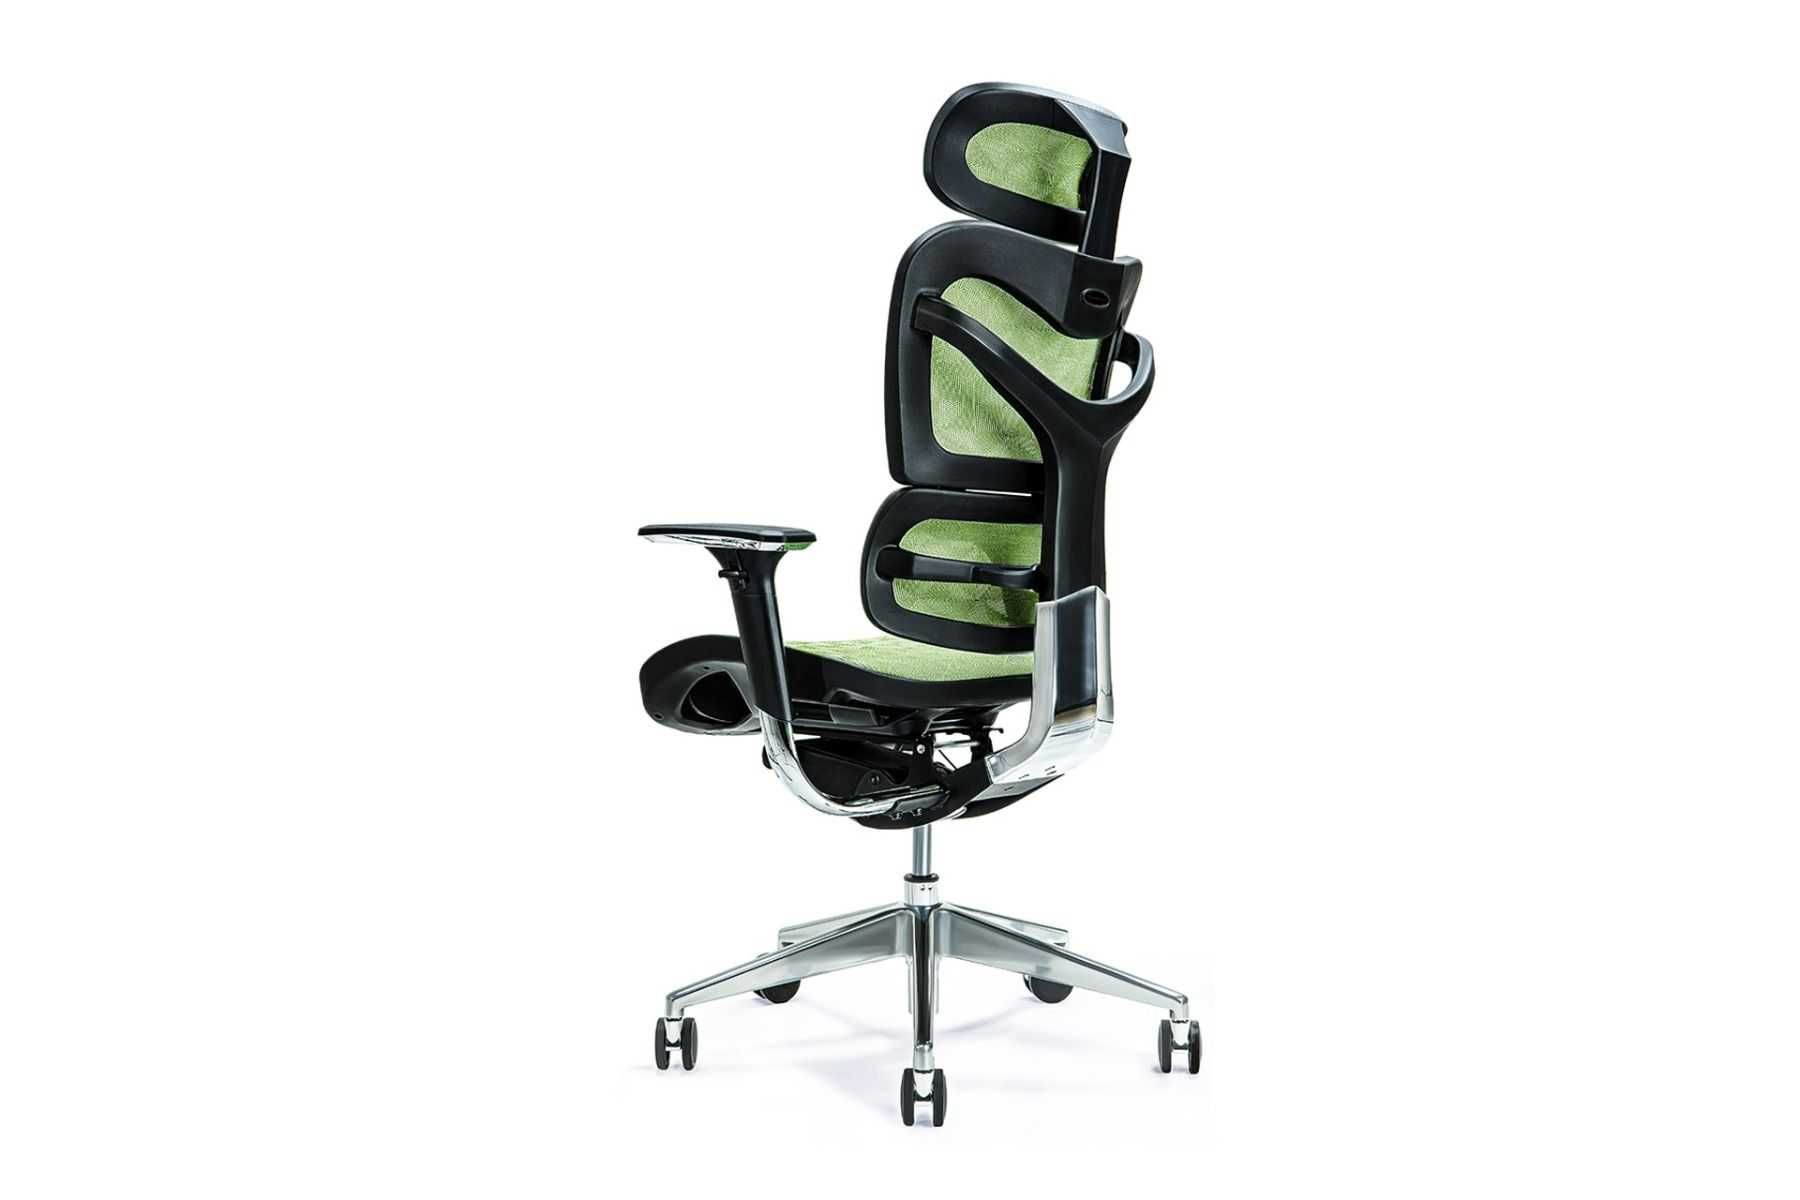 Zielony ergonomiczny fotel biurowy, outlet, -50%, ostatnie szt